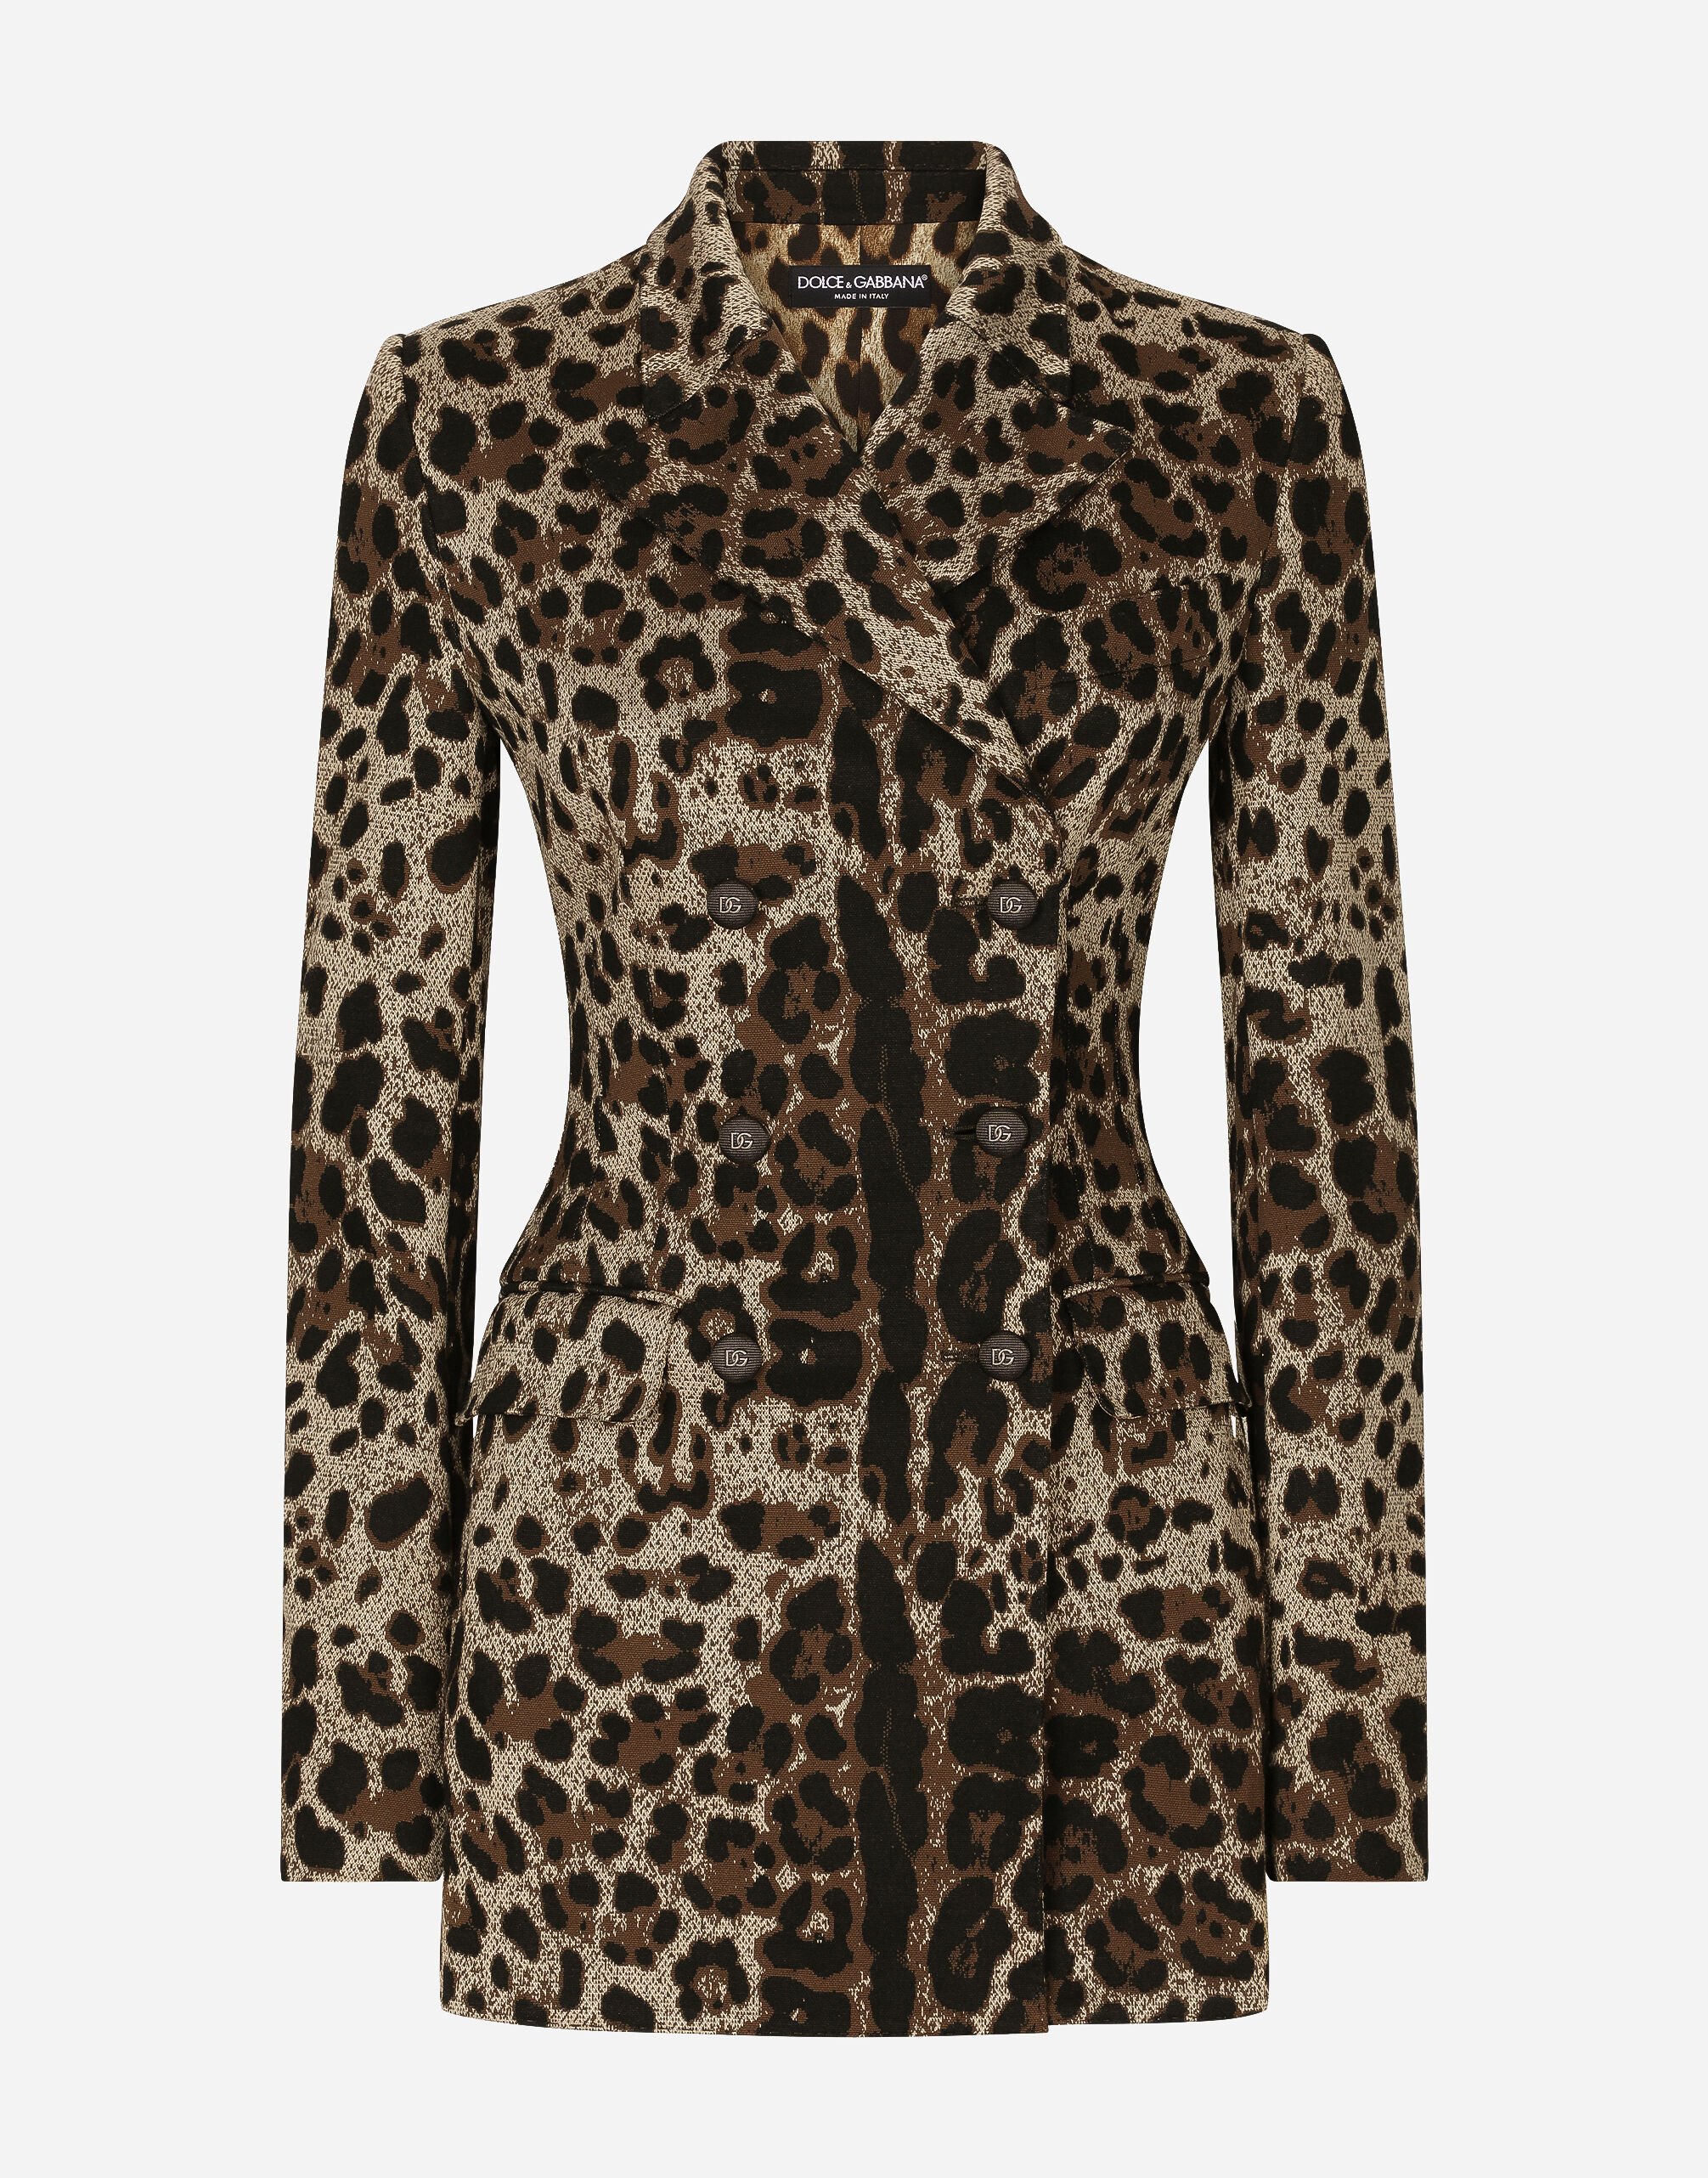 Dolce&Gabbana Double-breasted wool Turlington jacket with jacquard leopard design Beige F7W98TFUWDU